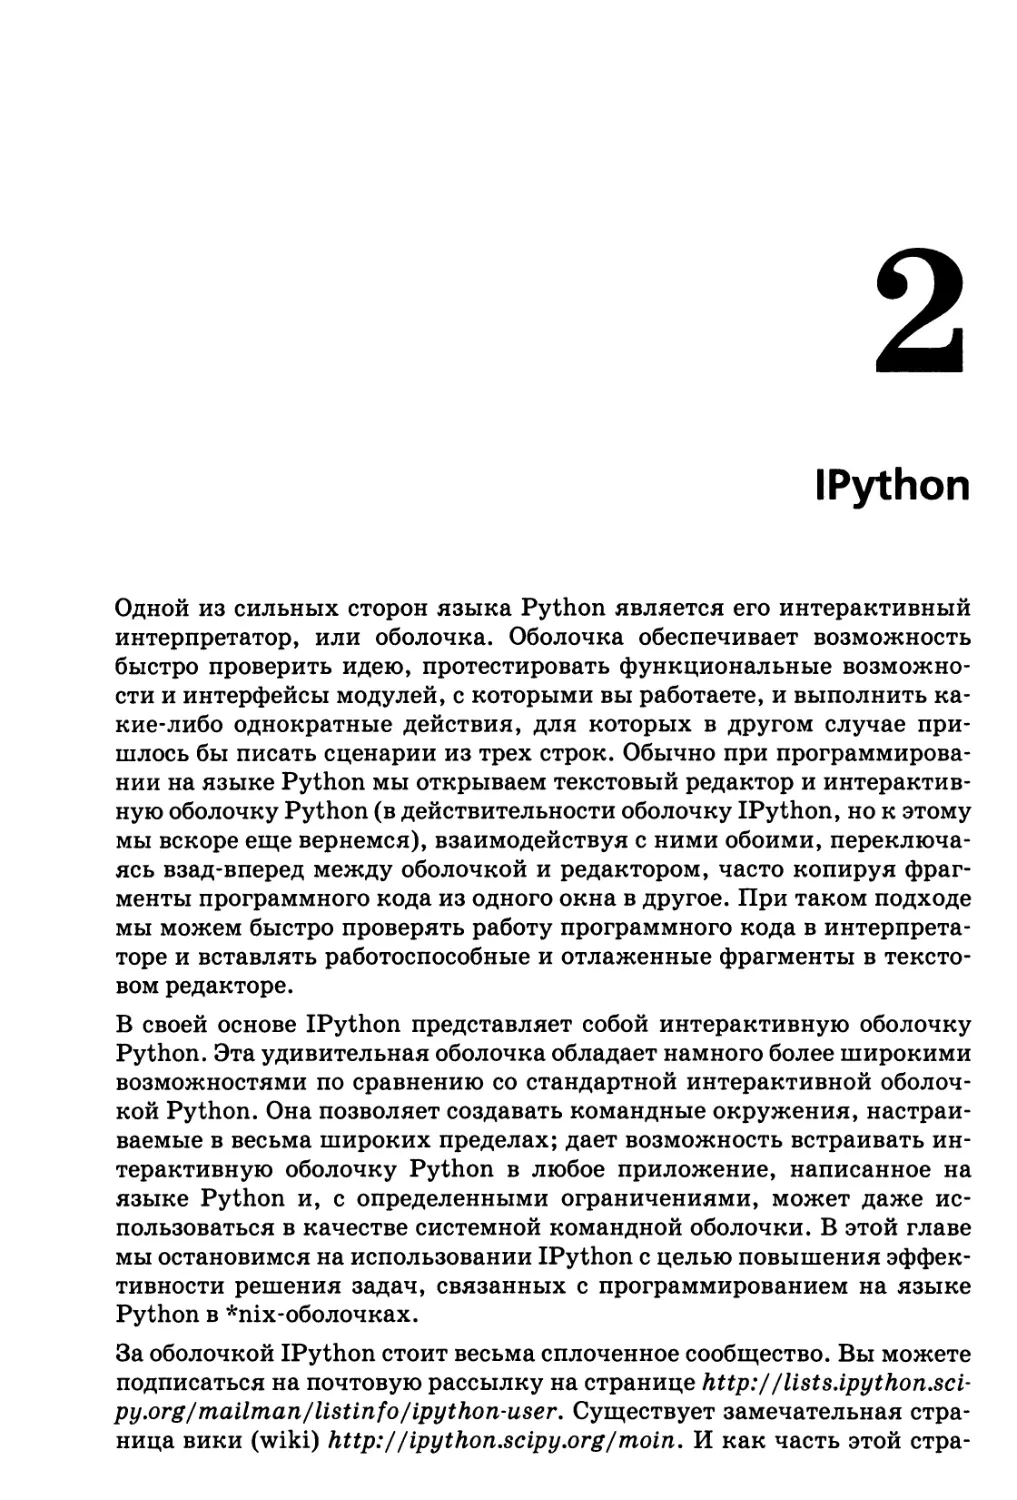 2. IPython